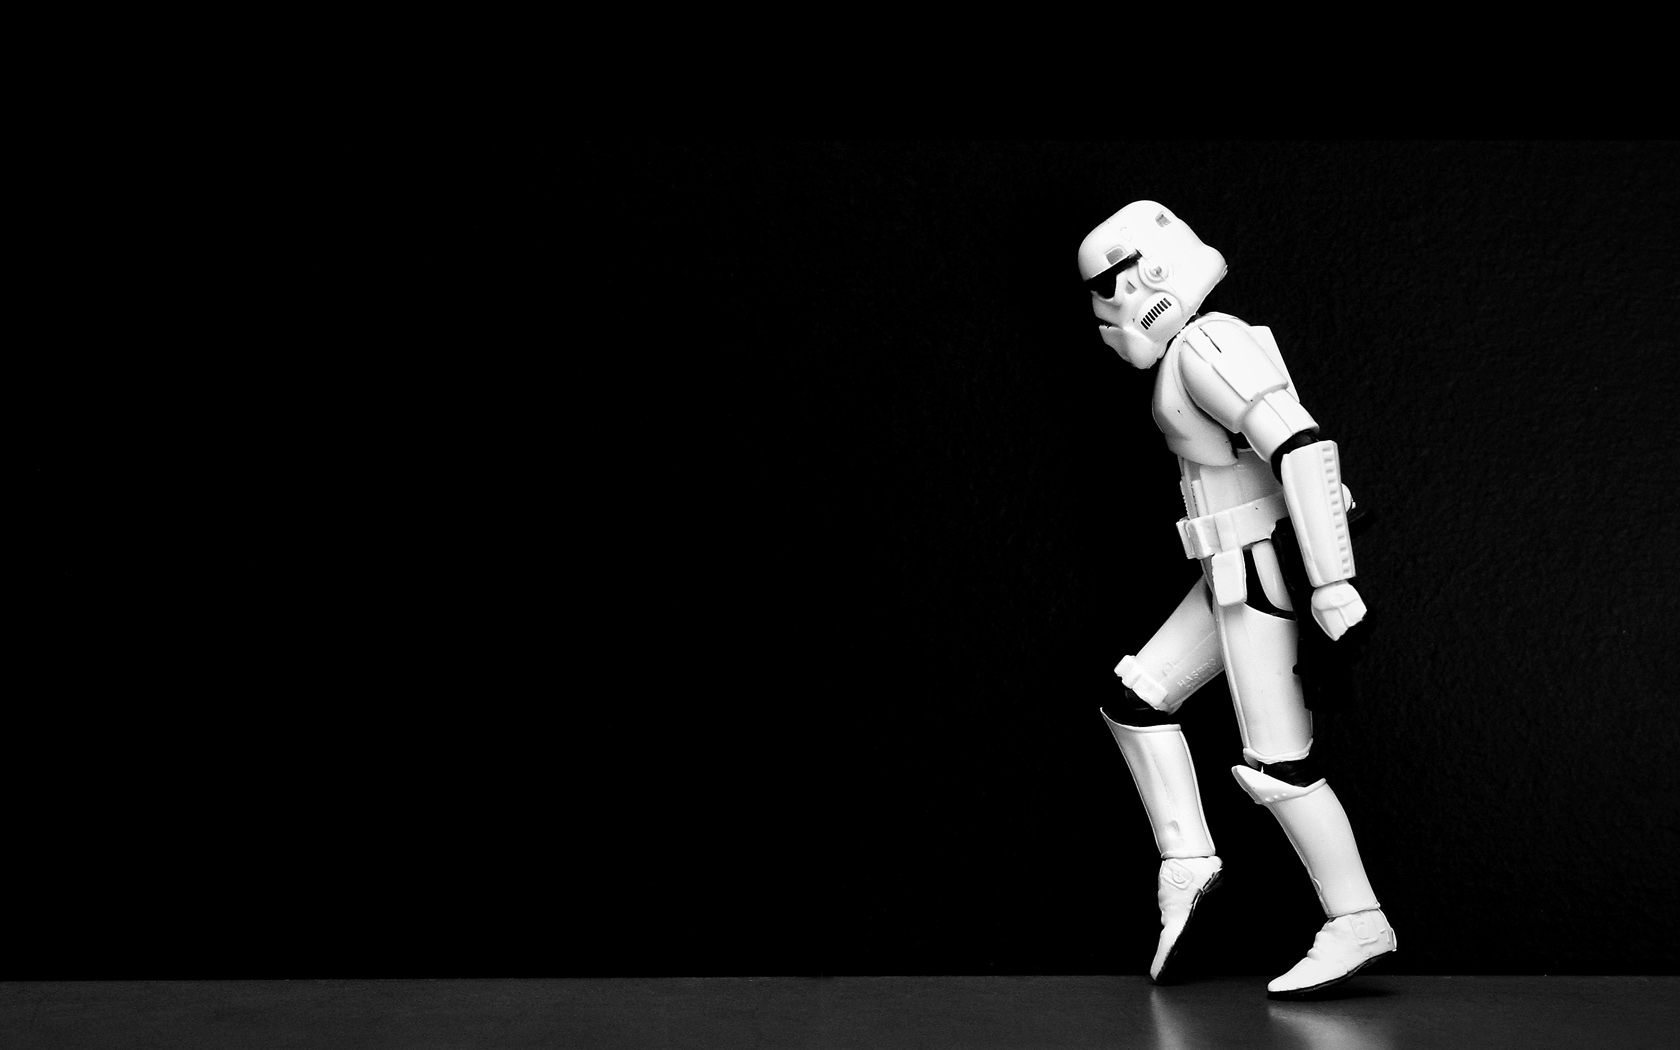 Stormtrooper Moonwalk Wallpaper Stormtroopers